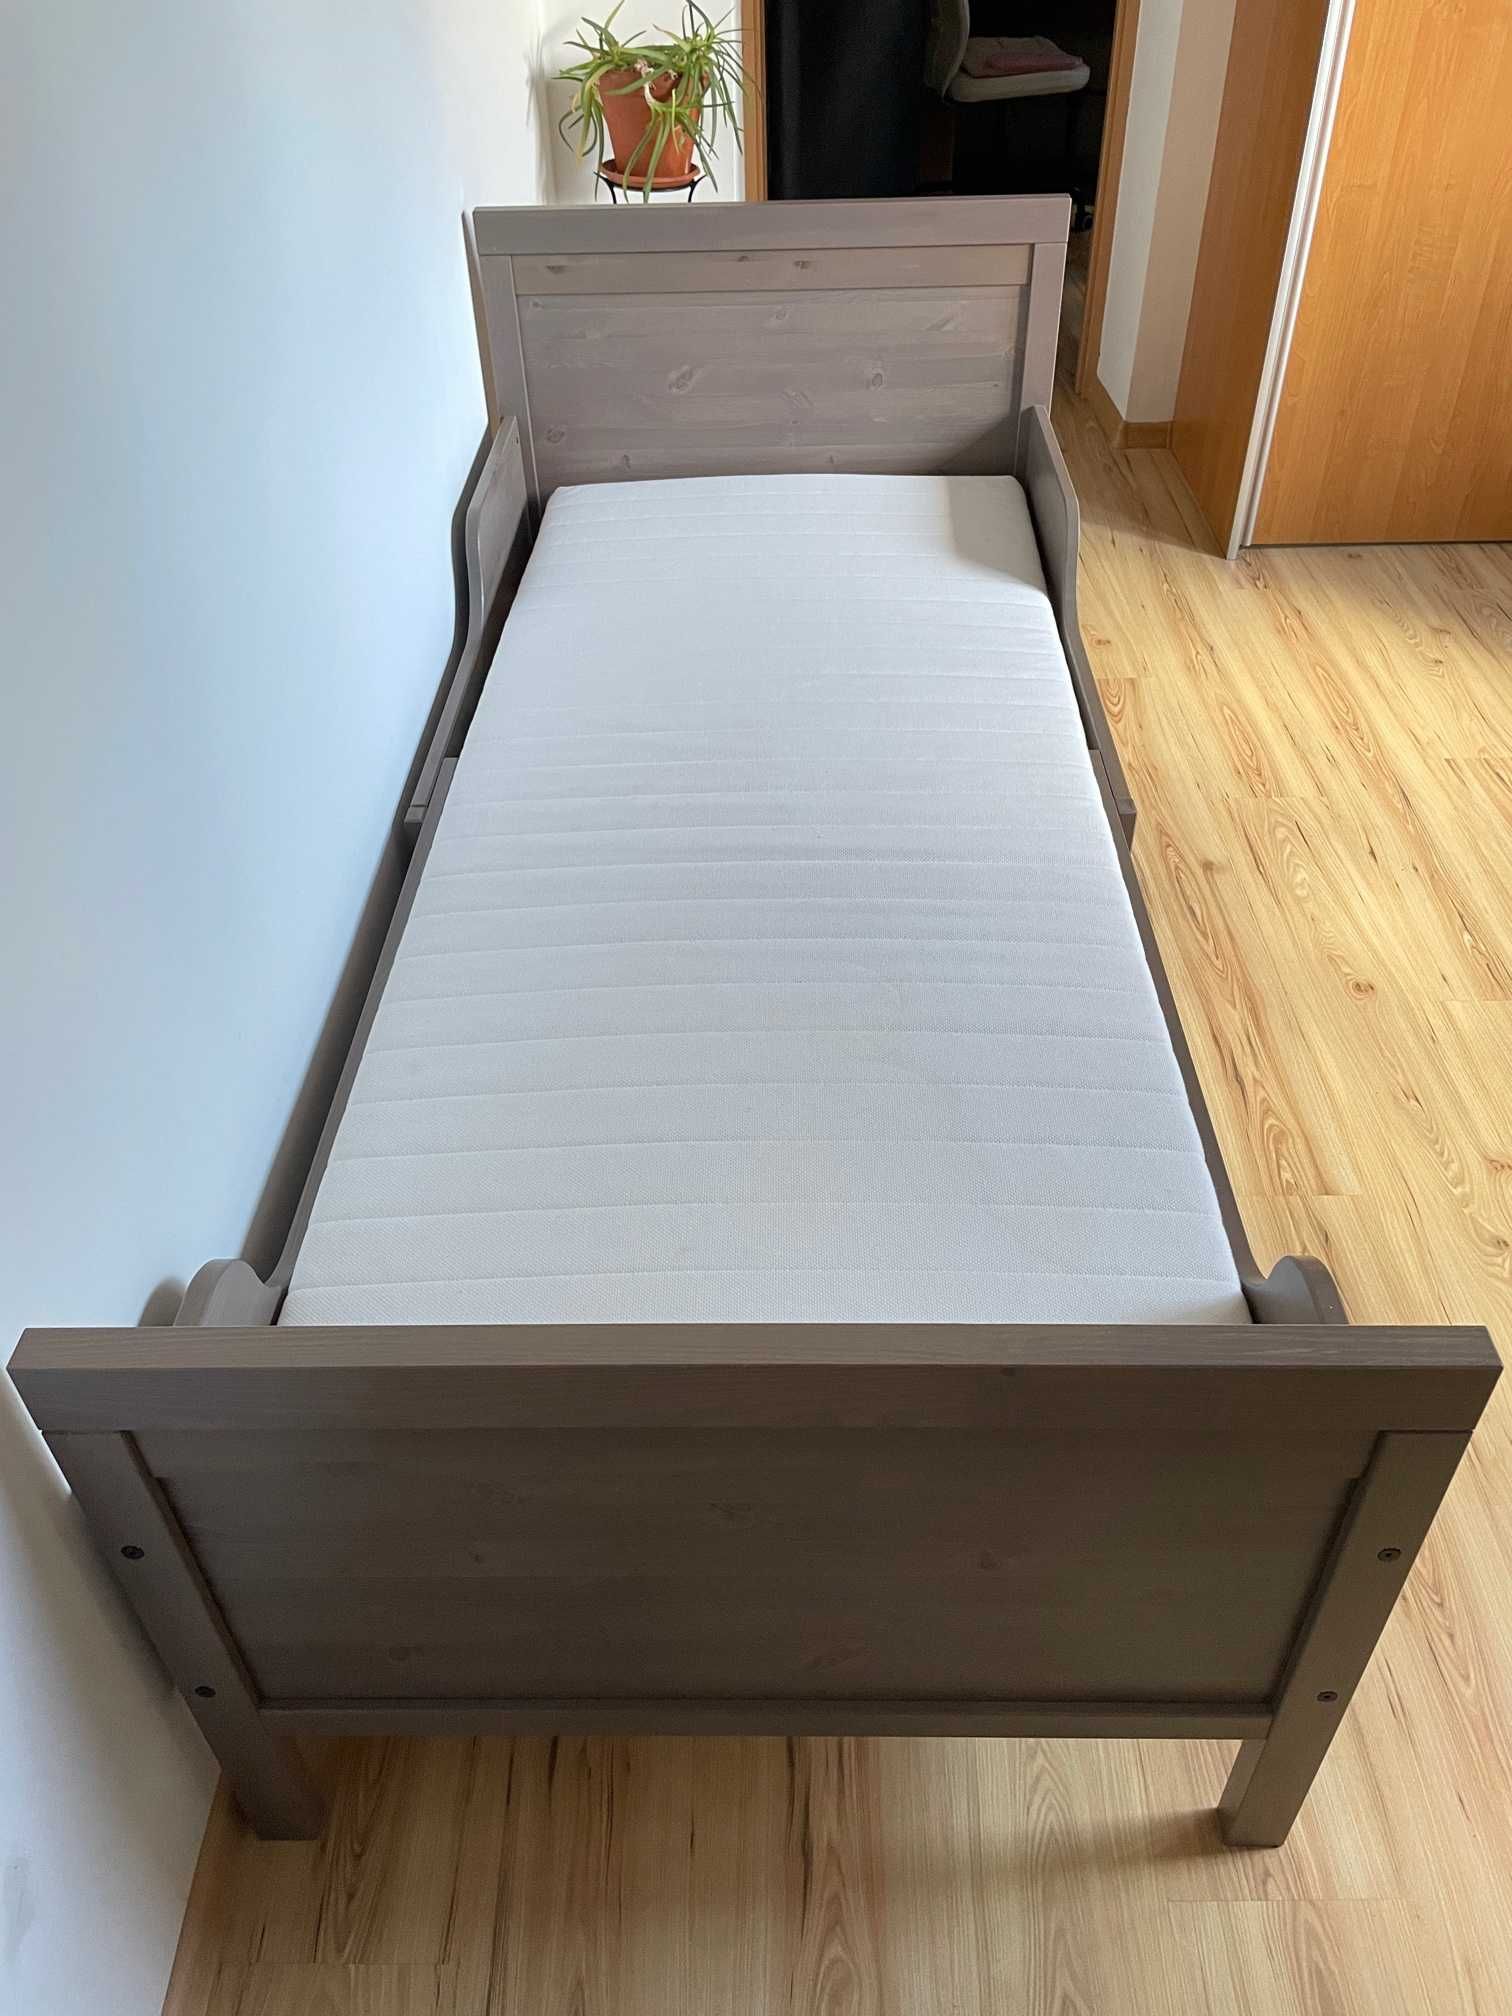 łóżko LURÖY z materacem i dnem (IKEA)